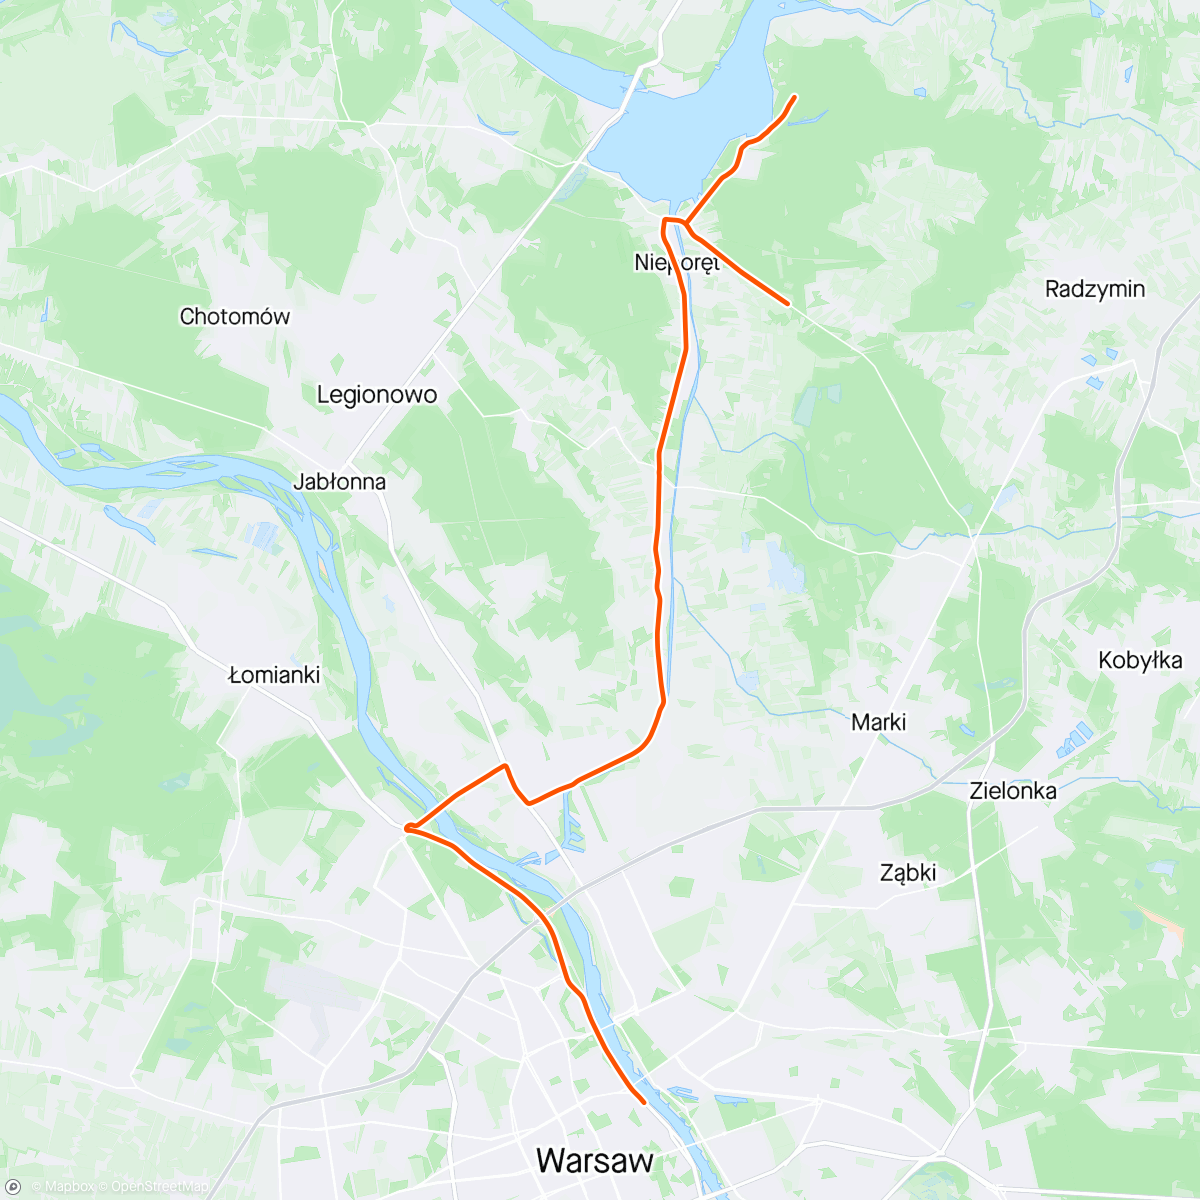 Carte de l'activité ROUVY - Warsaw Olympic Triathlon